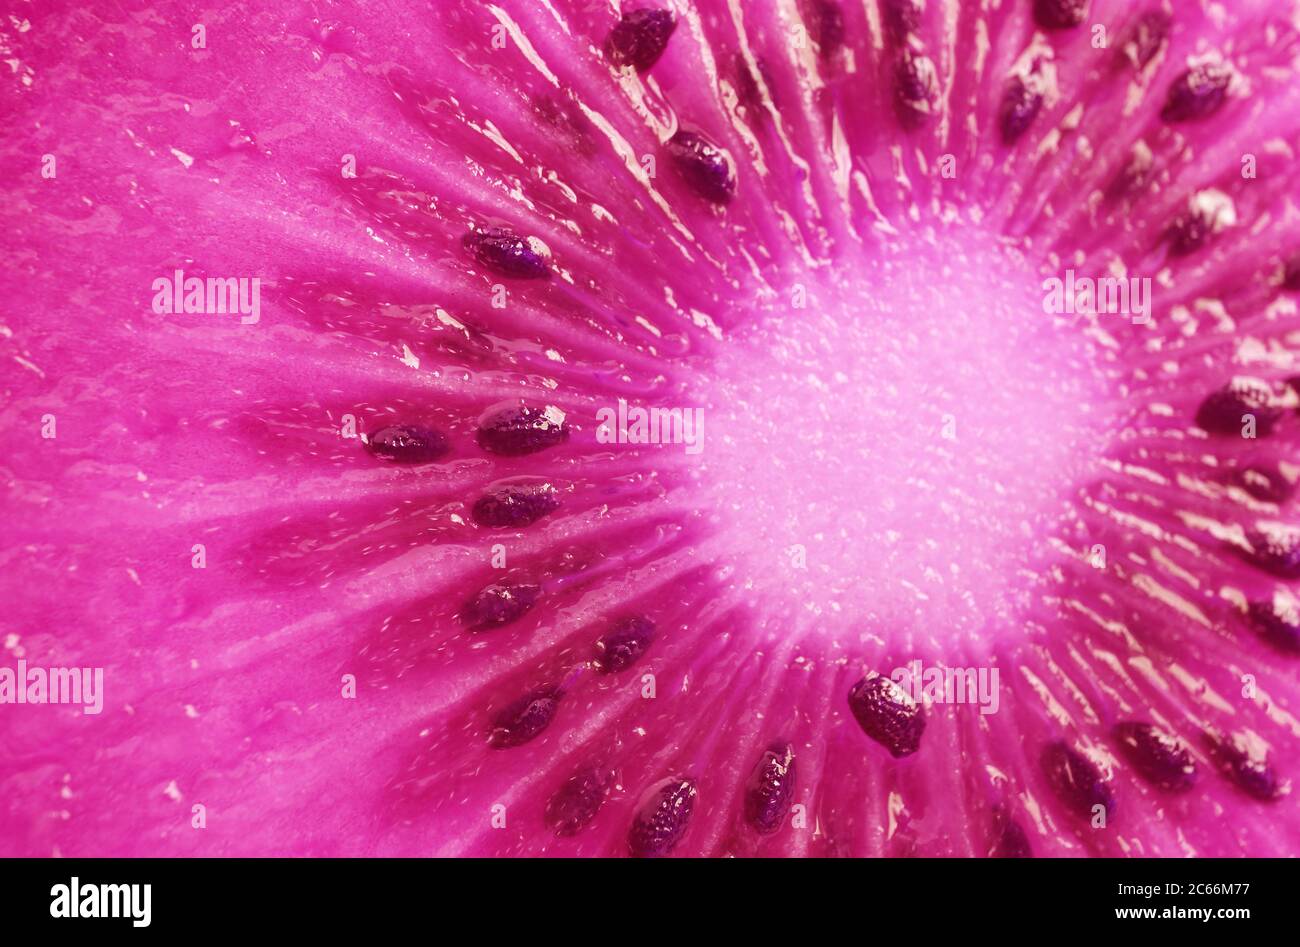 Pop Art Surreal Style schockierende rosa gefärbte Kiwi Obst Cross Section einzigartige Textur Stockfoto